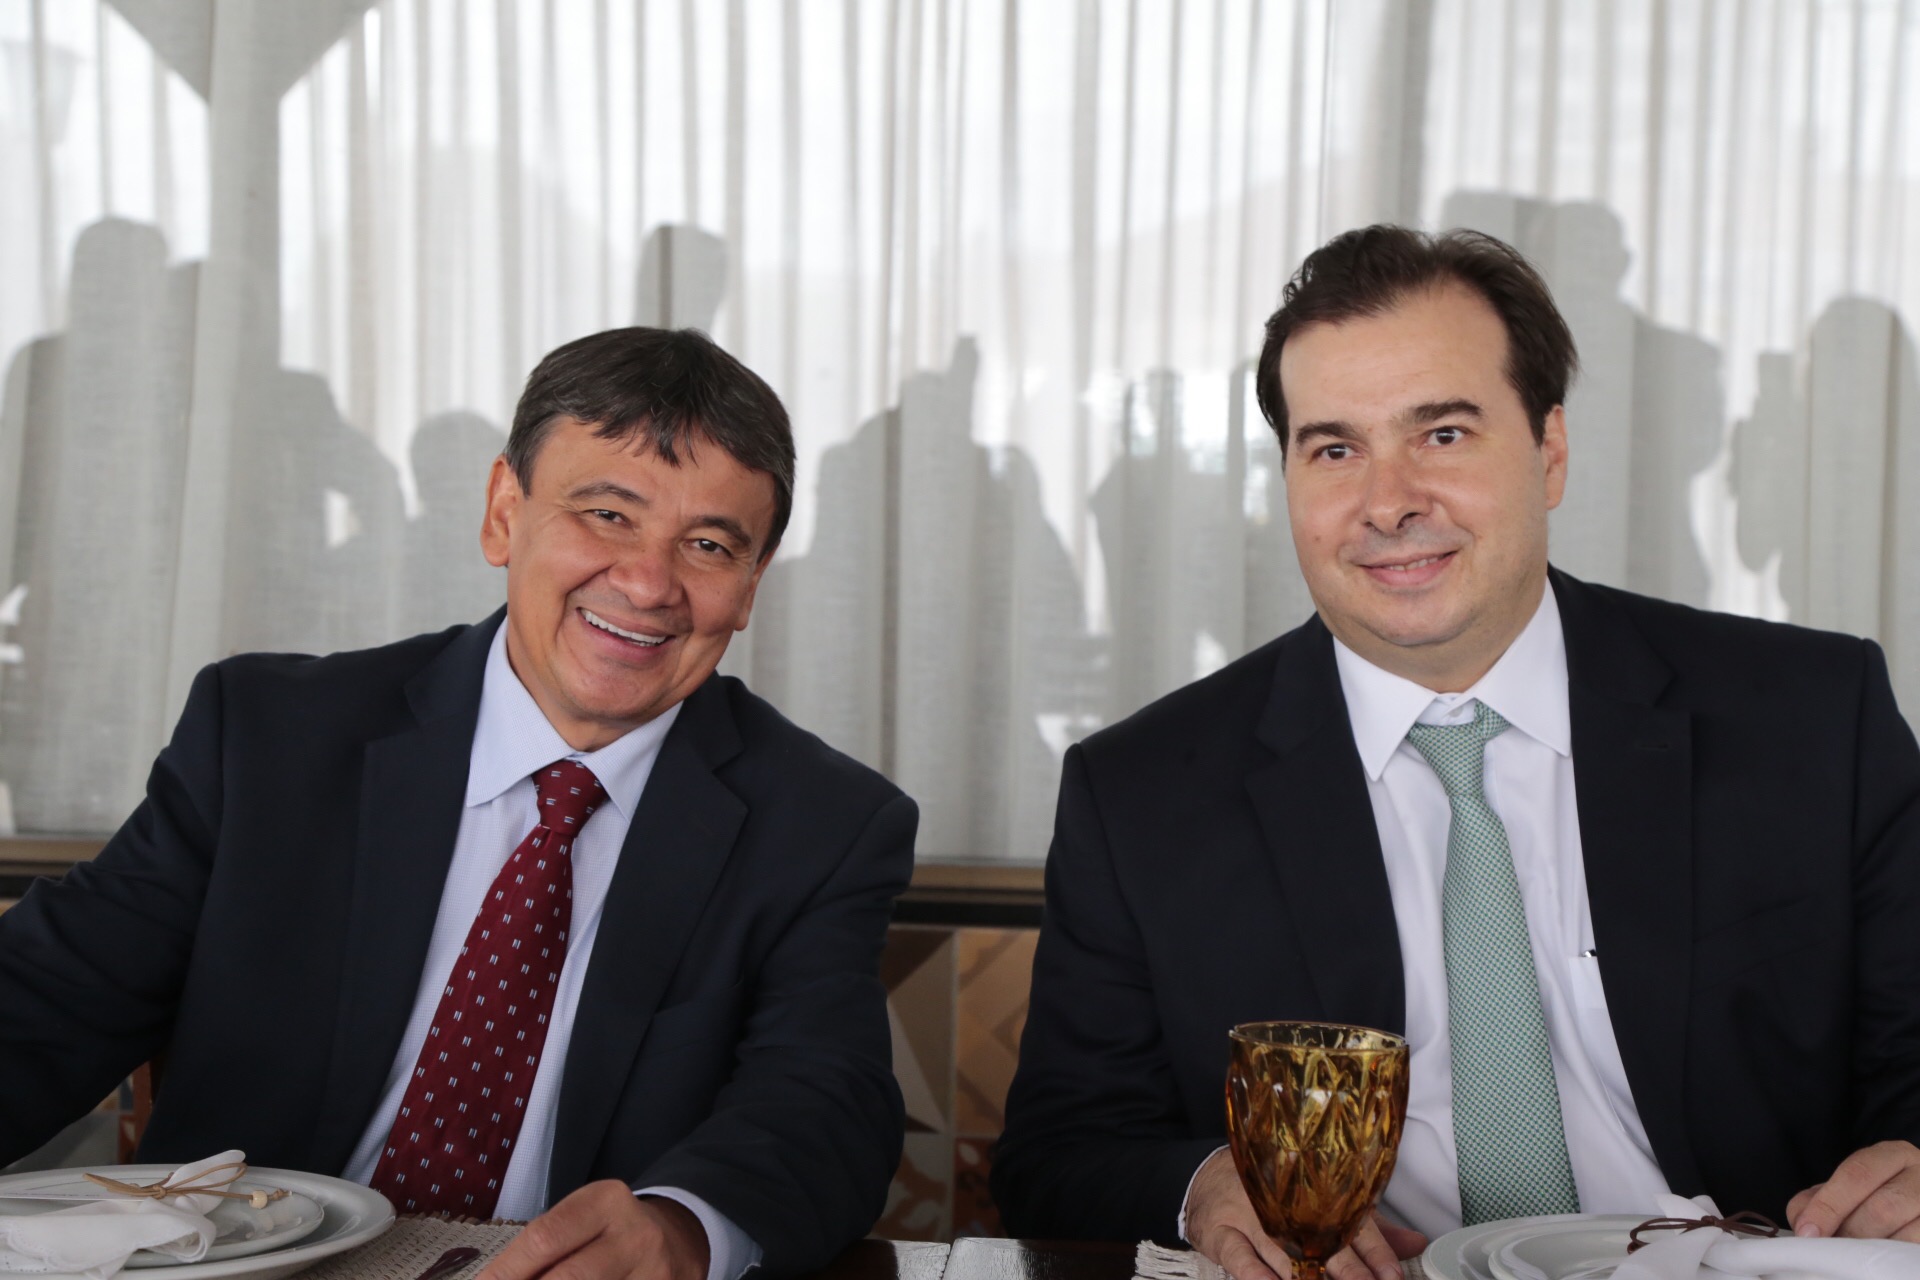 O Governador participou de almoço com o presidente do Congresso Rodrigo Maia